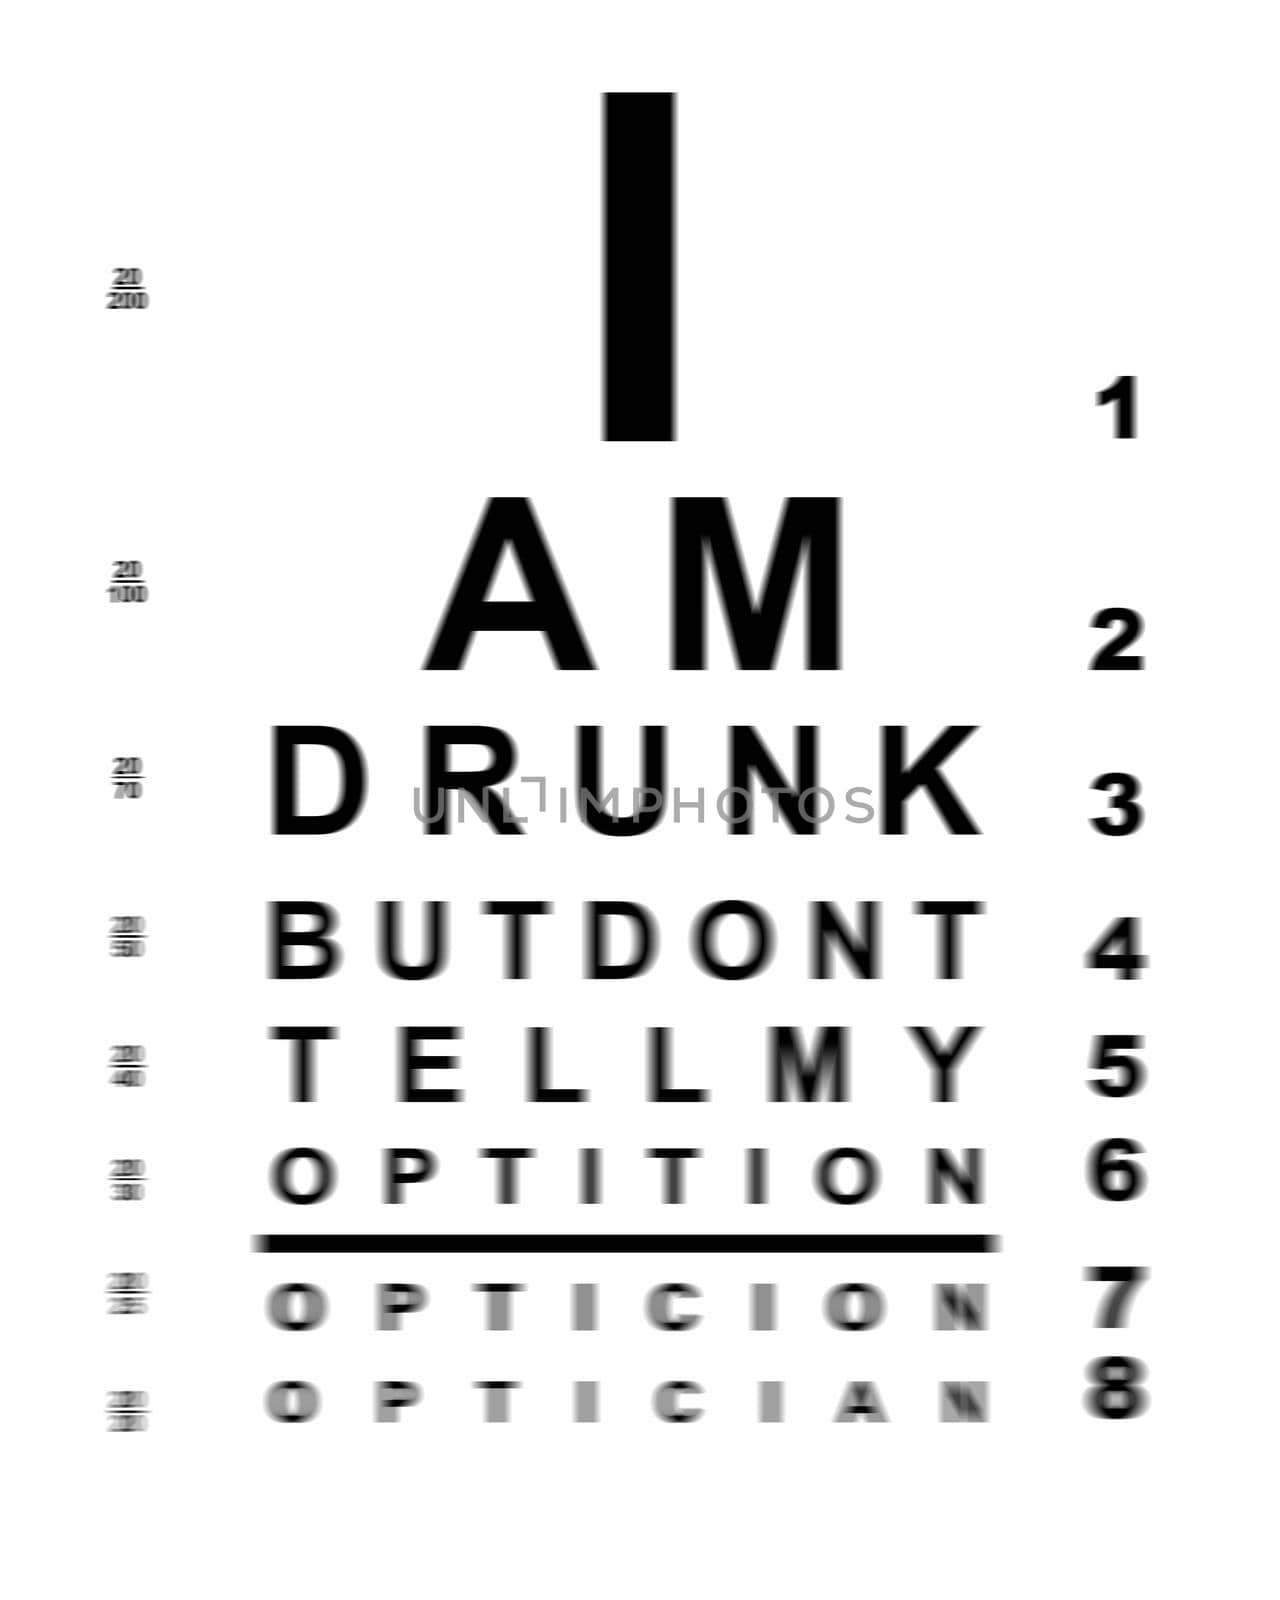 Blurry drunk eye chart by Bigalbaloo